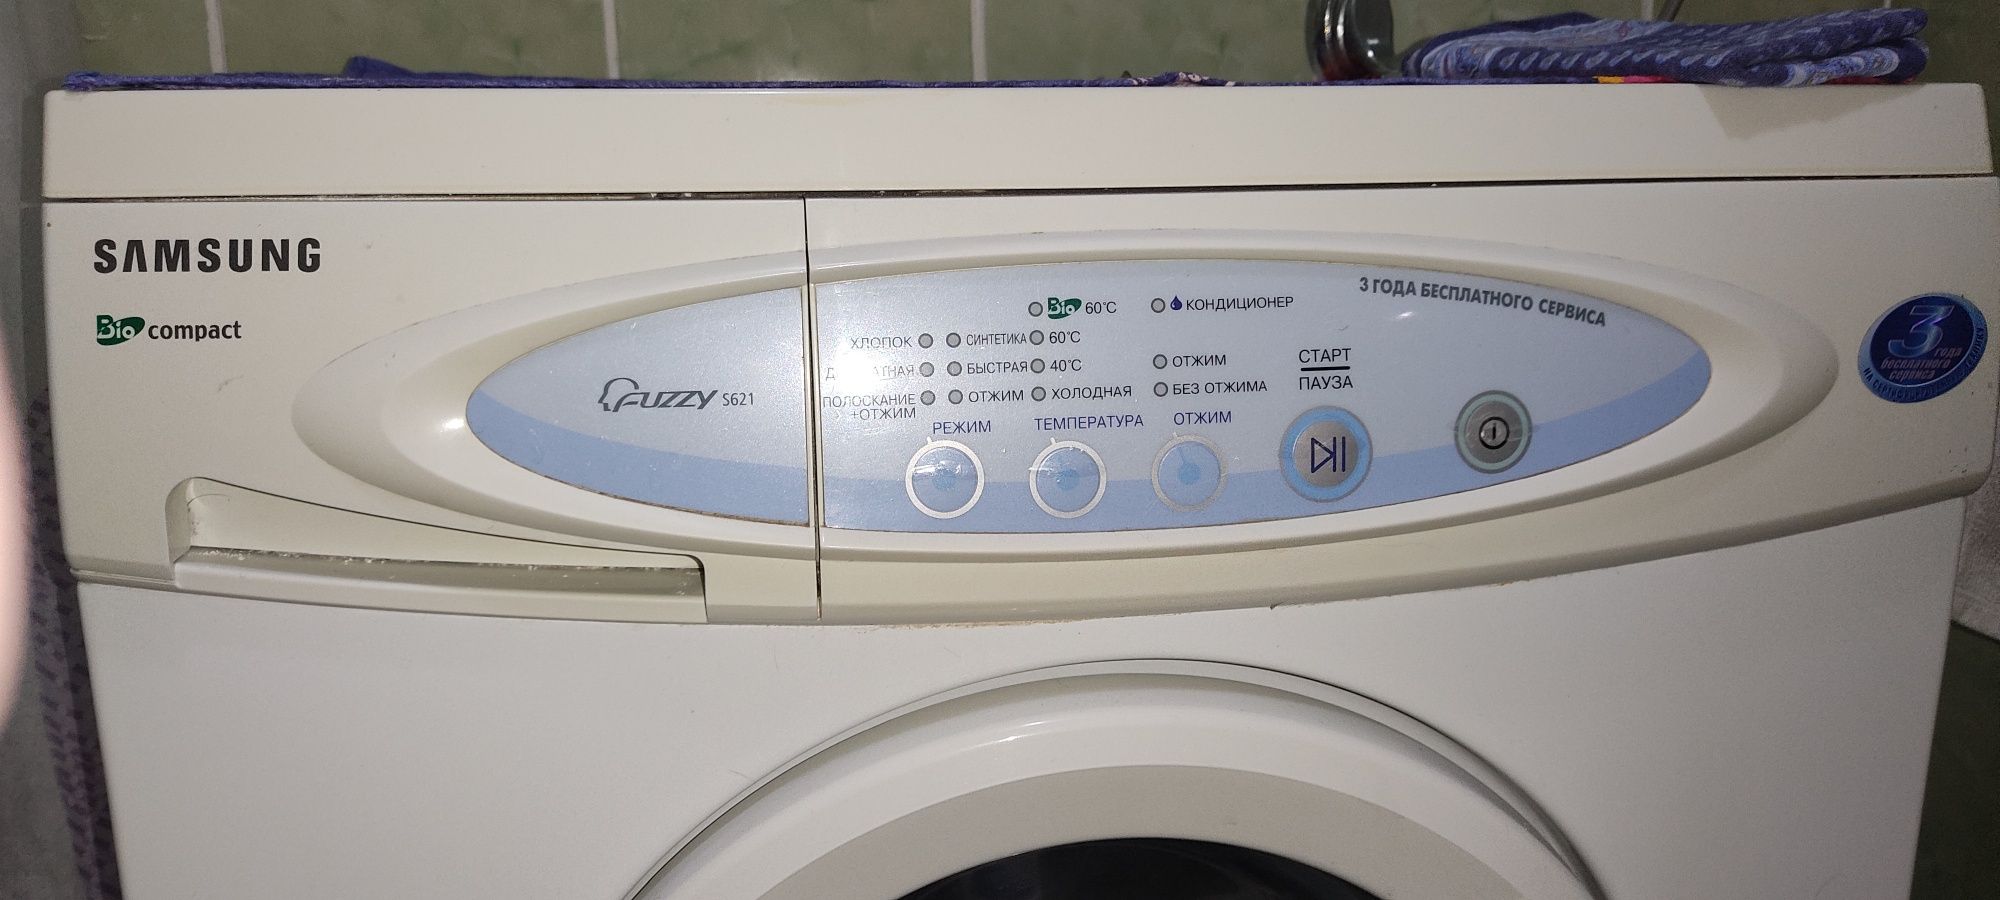 Продам стиральную машинку Samsung сборка Корея,3,5кг